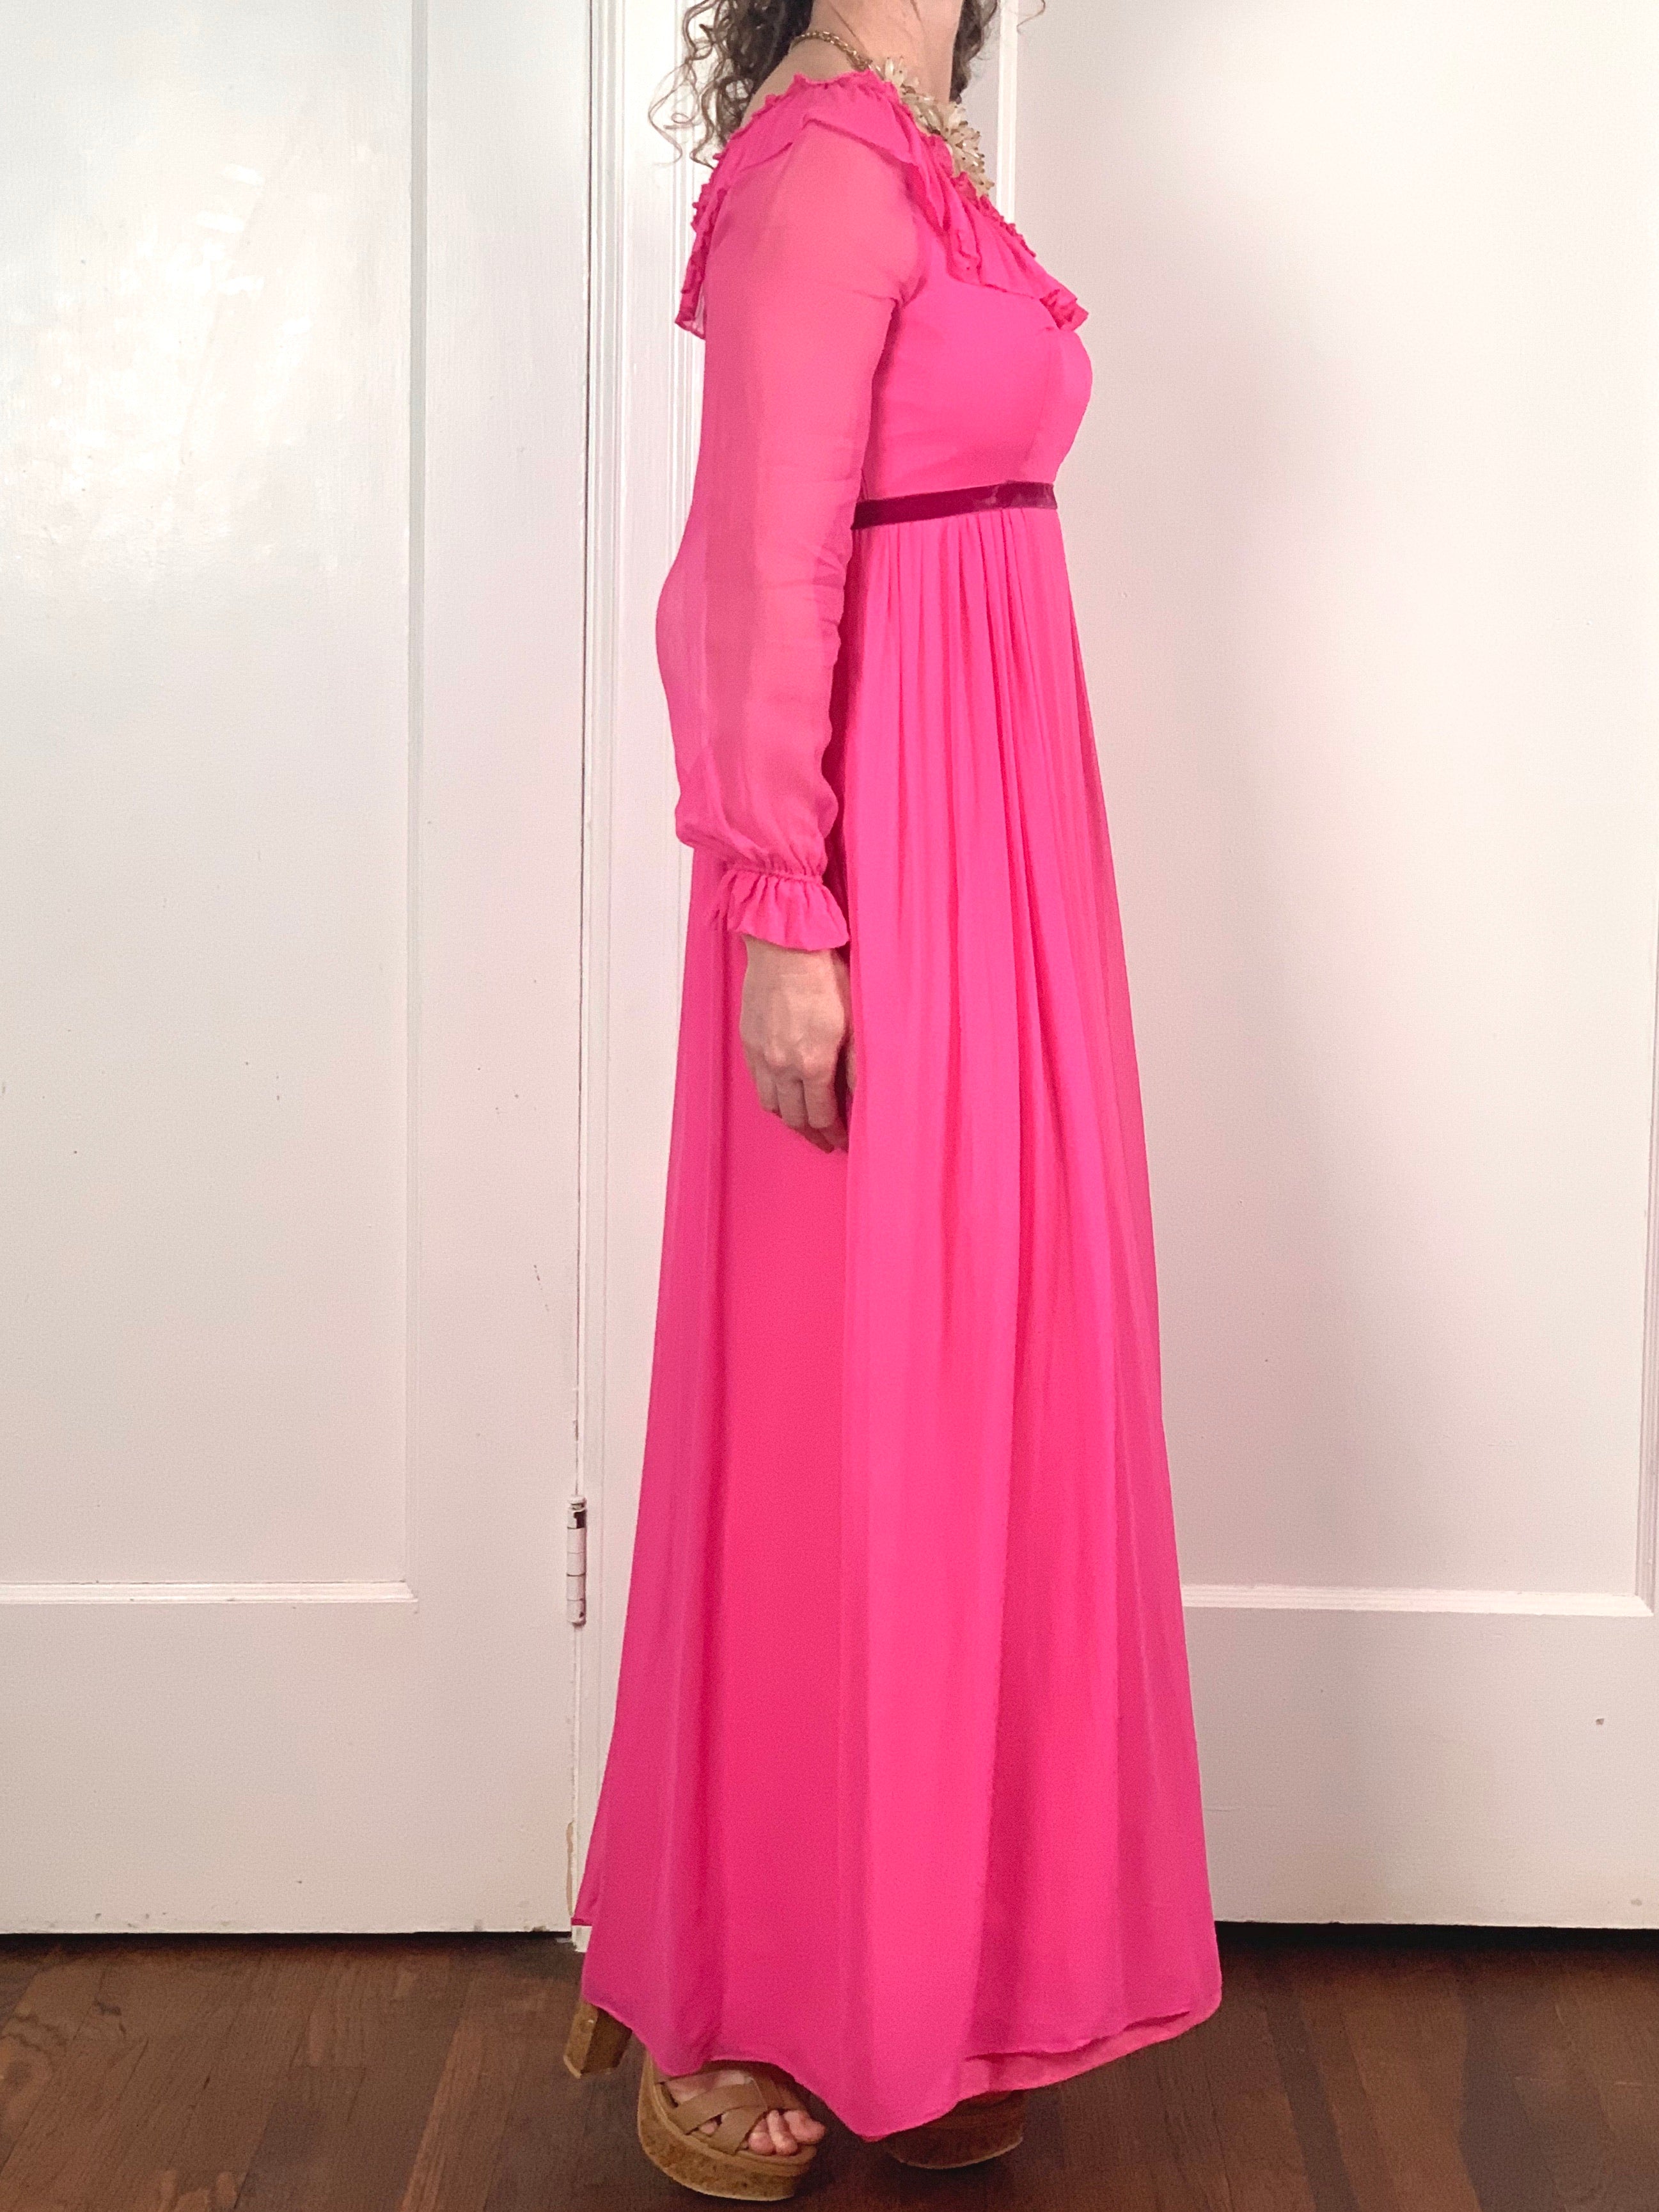 Pink Chiffon Dress - S